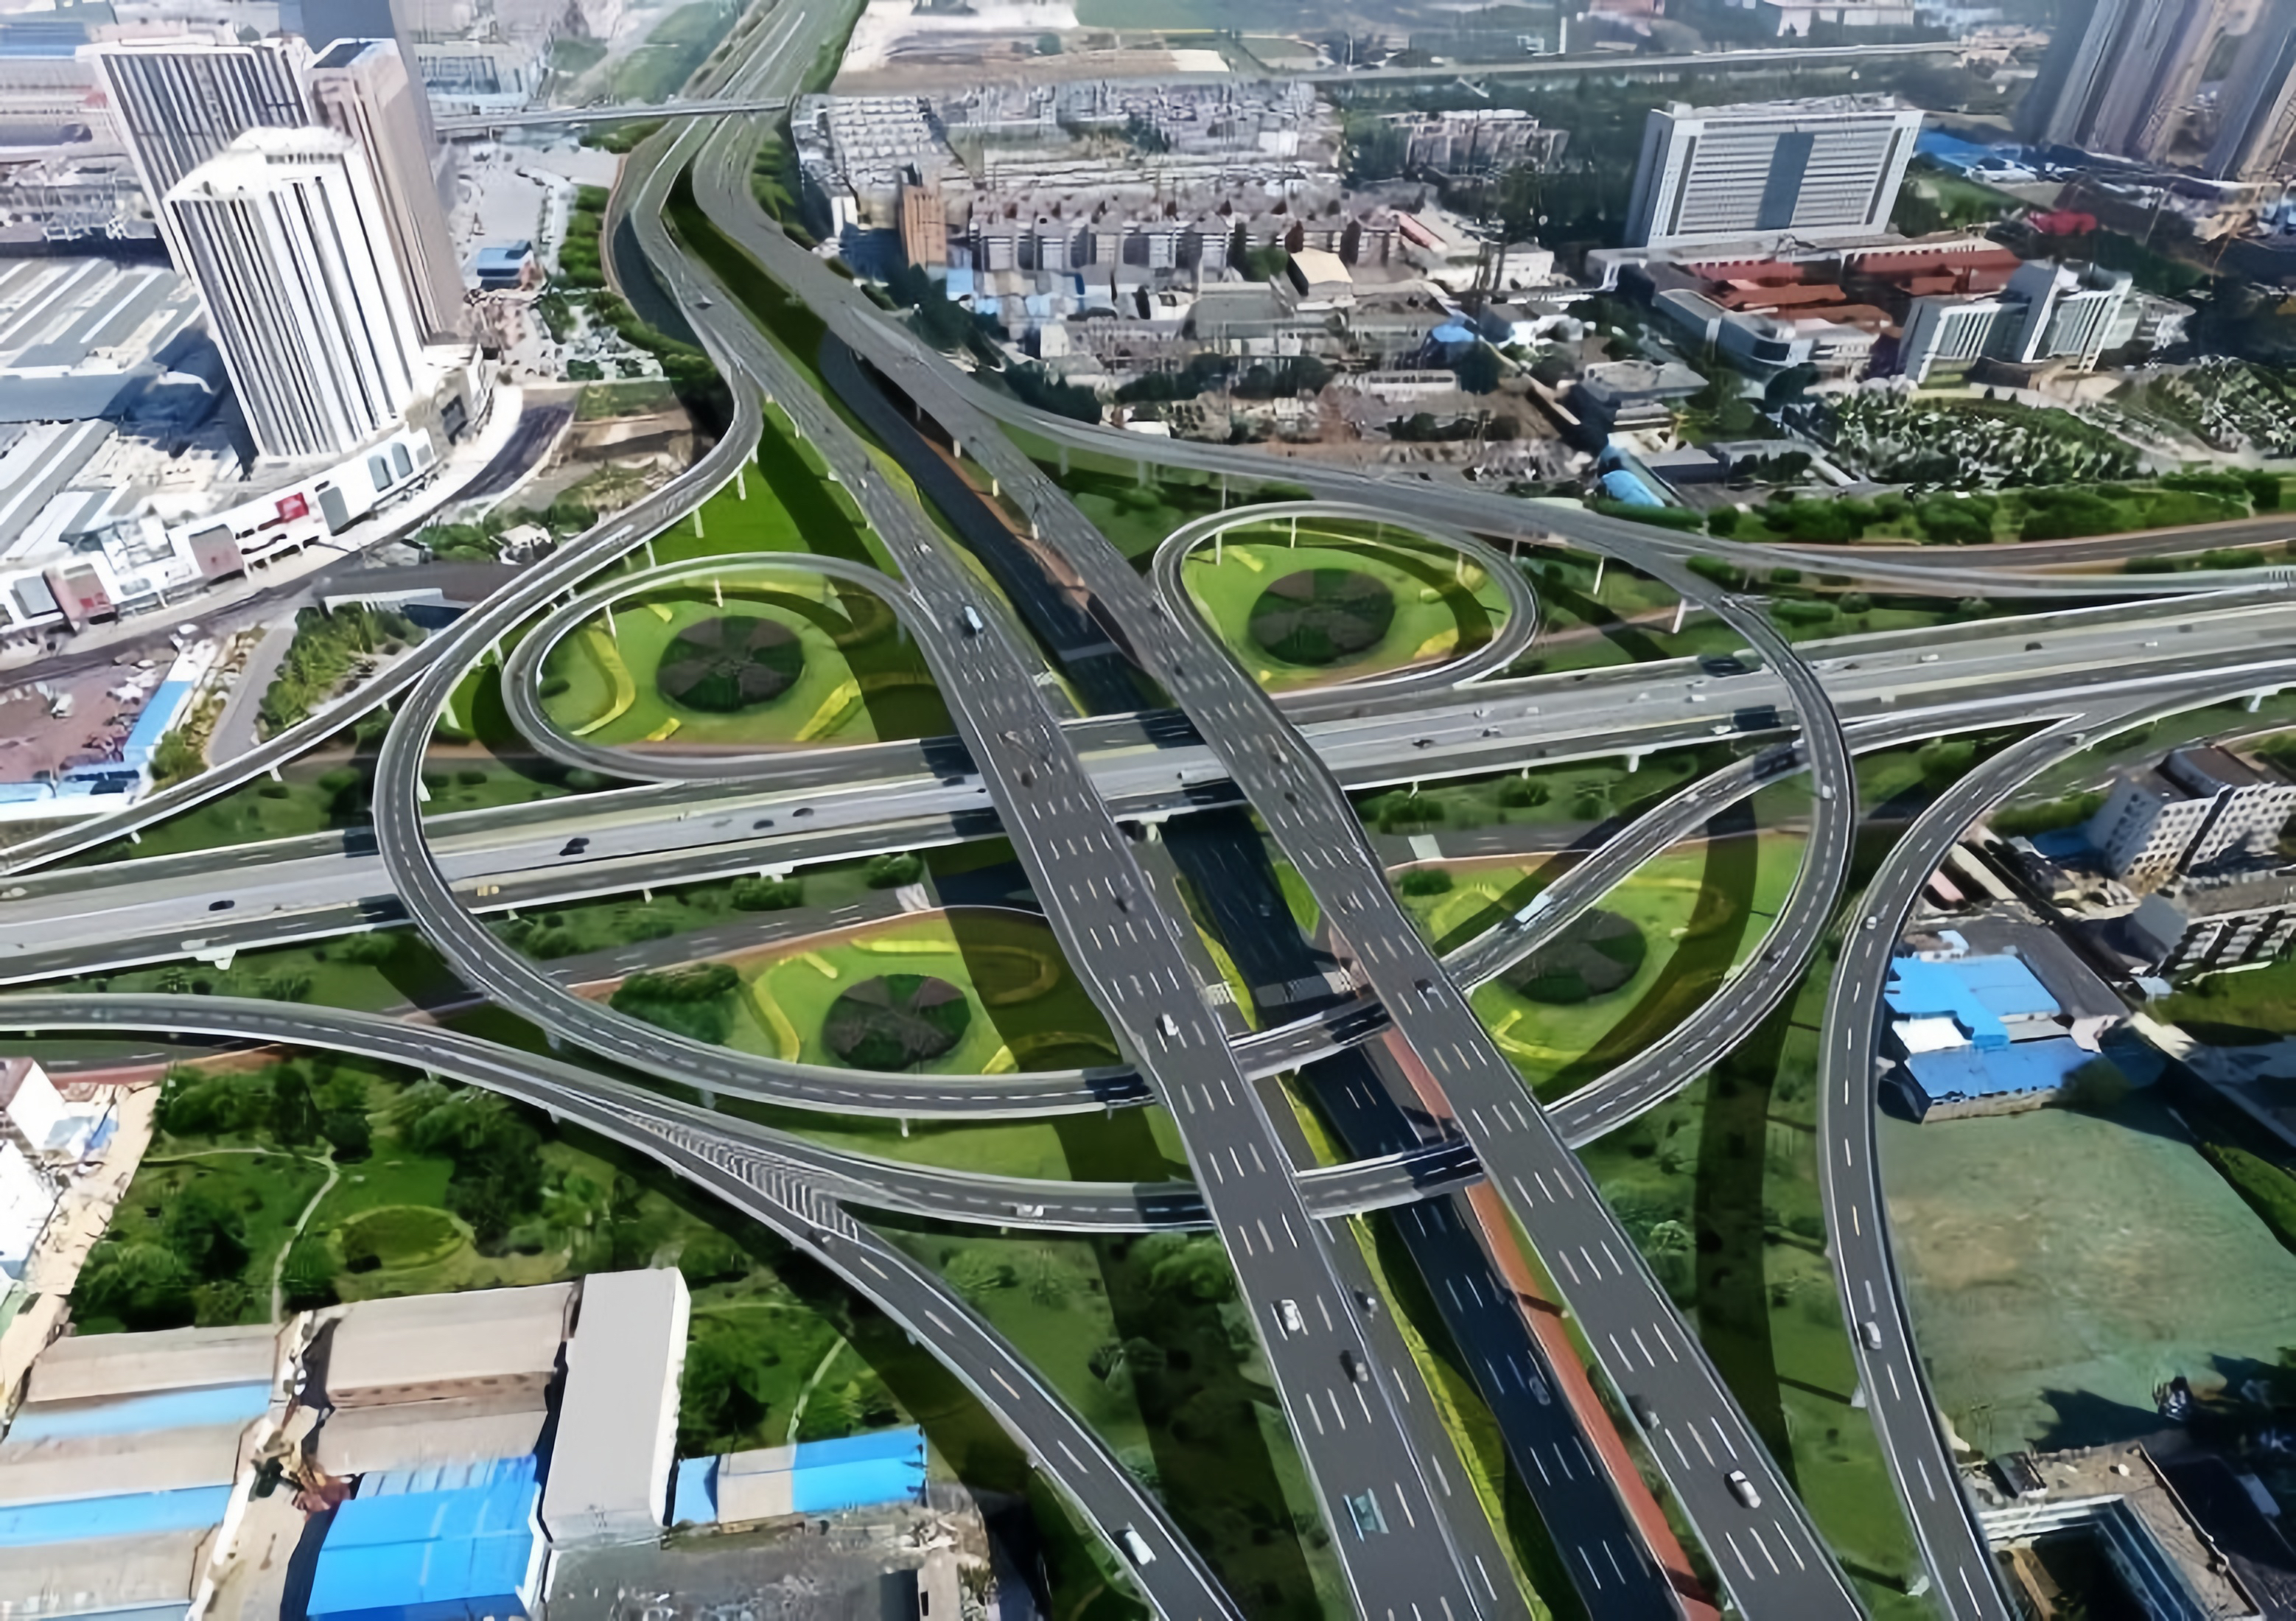 中犇检测认证有限公司顺利中标郑州市陇海路快速通道工程桥梁检测项目